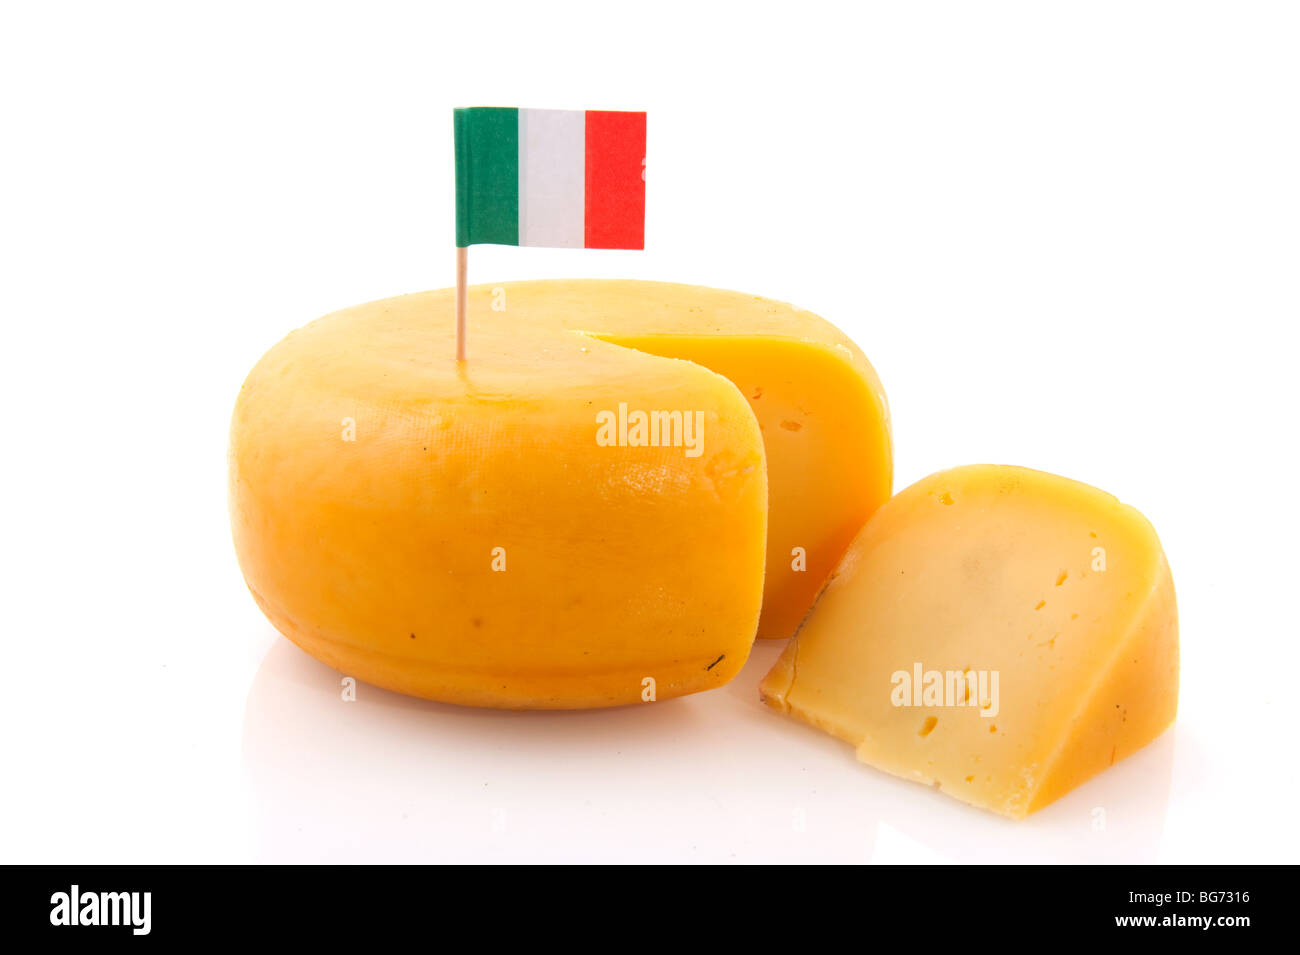 Toda gran queso amarillo con bandera italiana Foto de stock